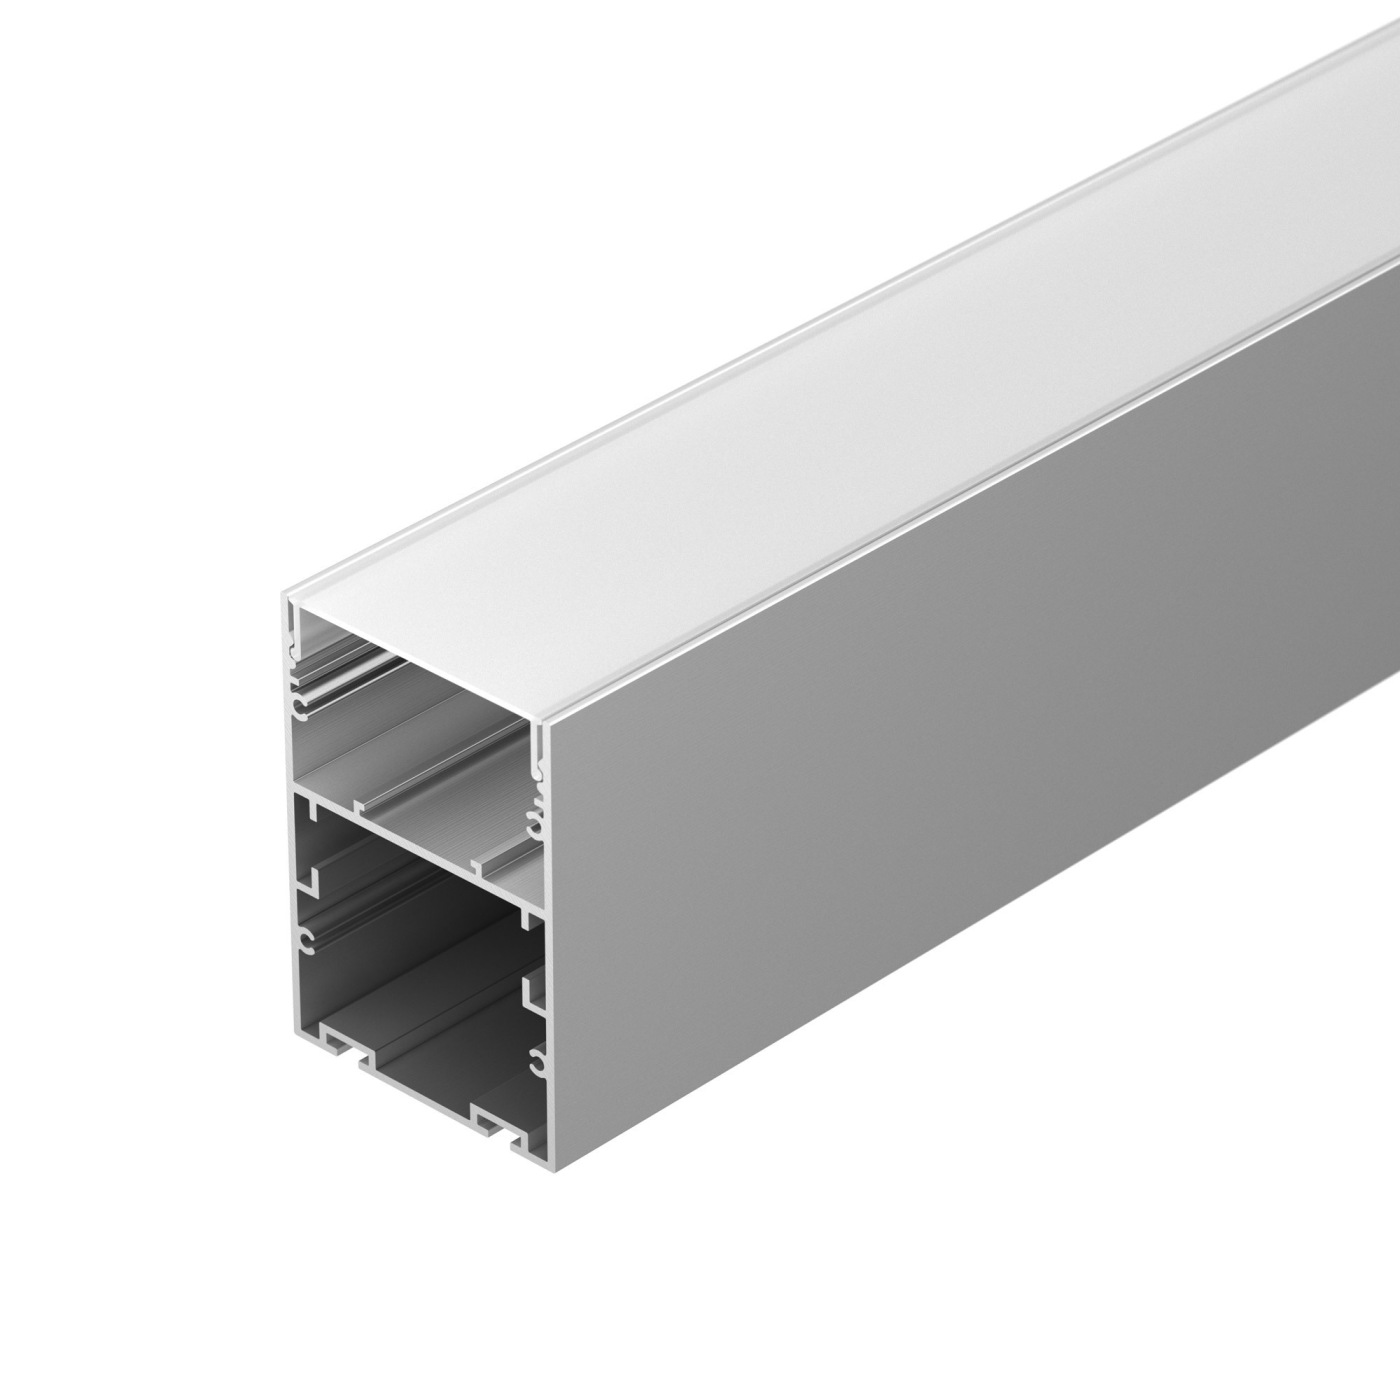 Профиль ARH-LINE-6085-2000 ANOD профиль алюминиевый накладной подвесной с отсеком для бп серебро cab266